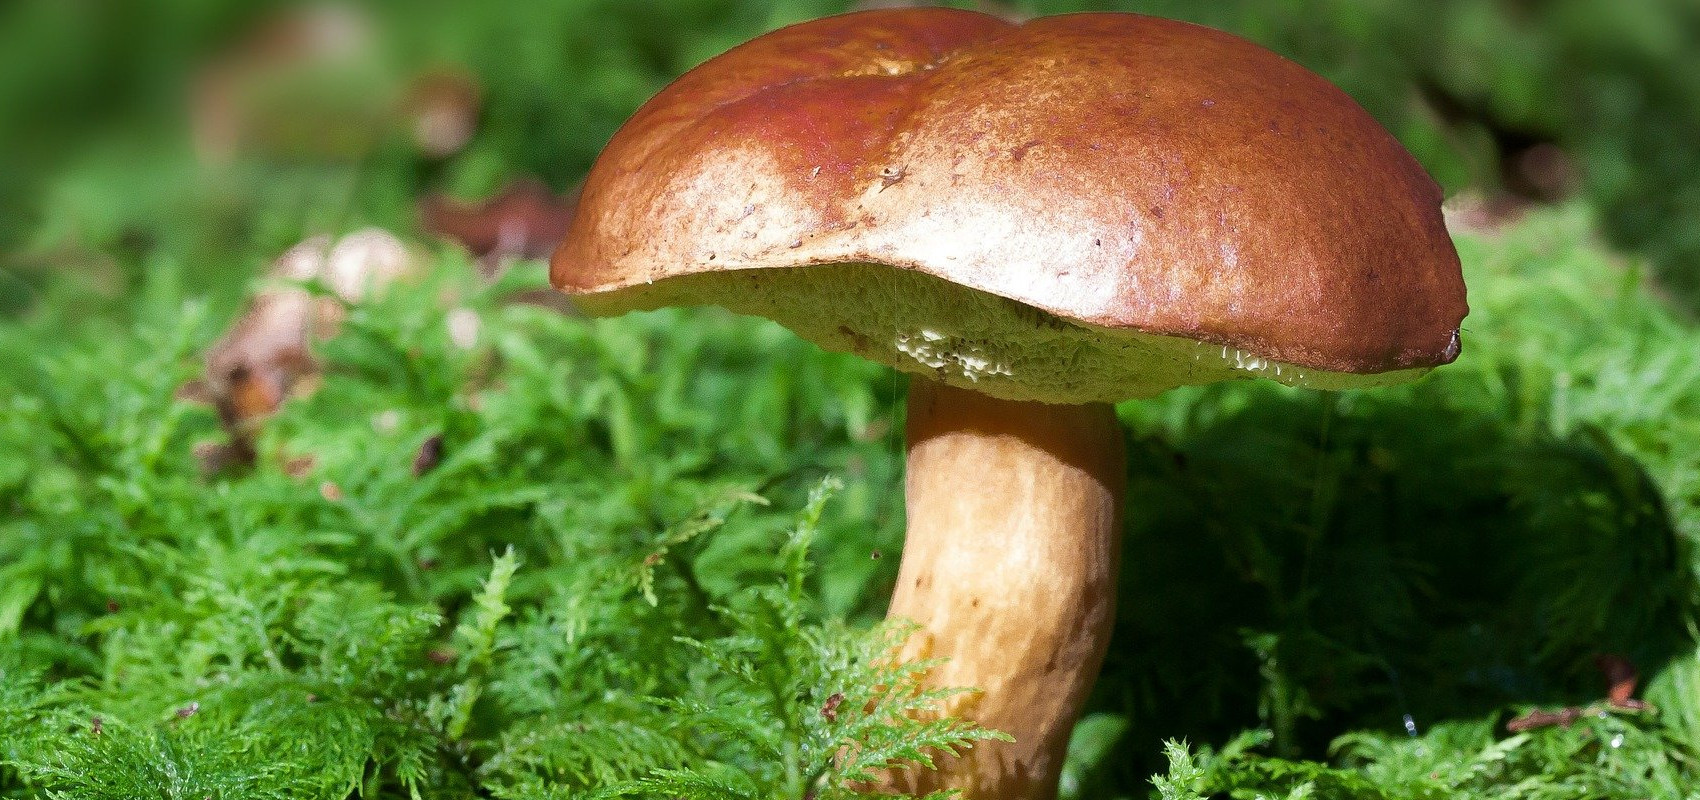 Legalna sprzedaż grzybów leśnych – wszystko co trzeba wiedzieć